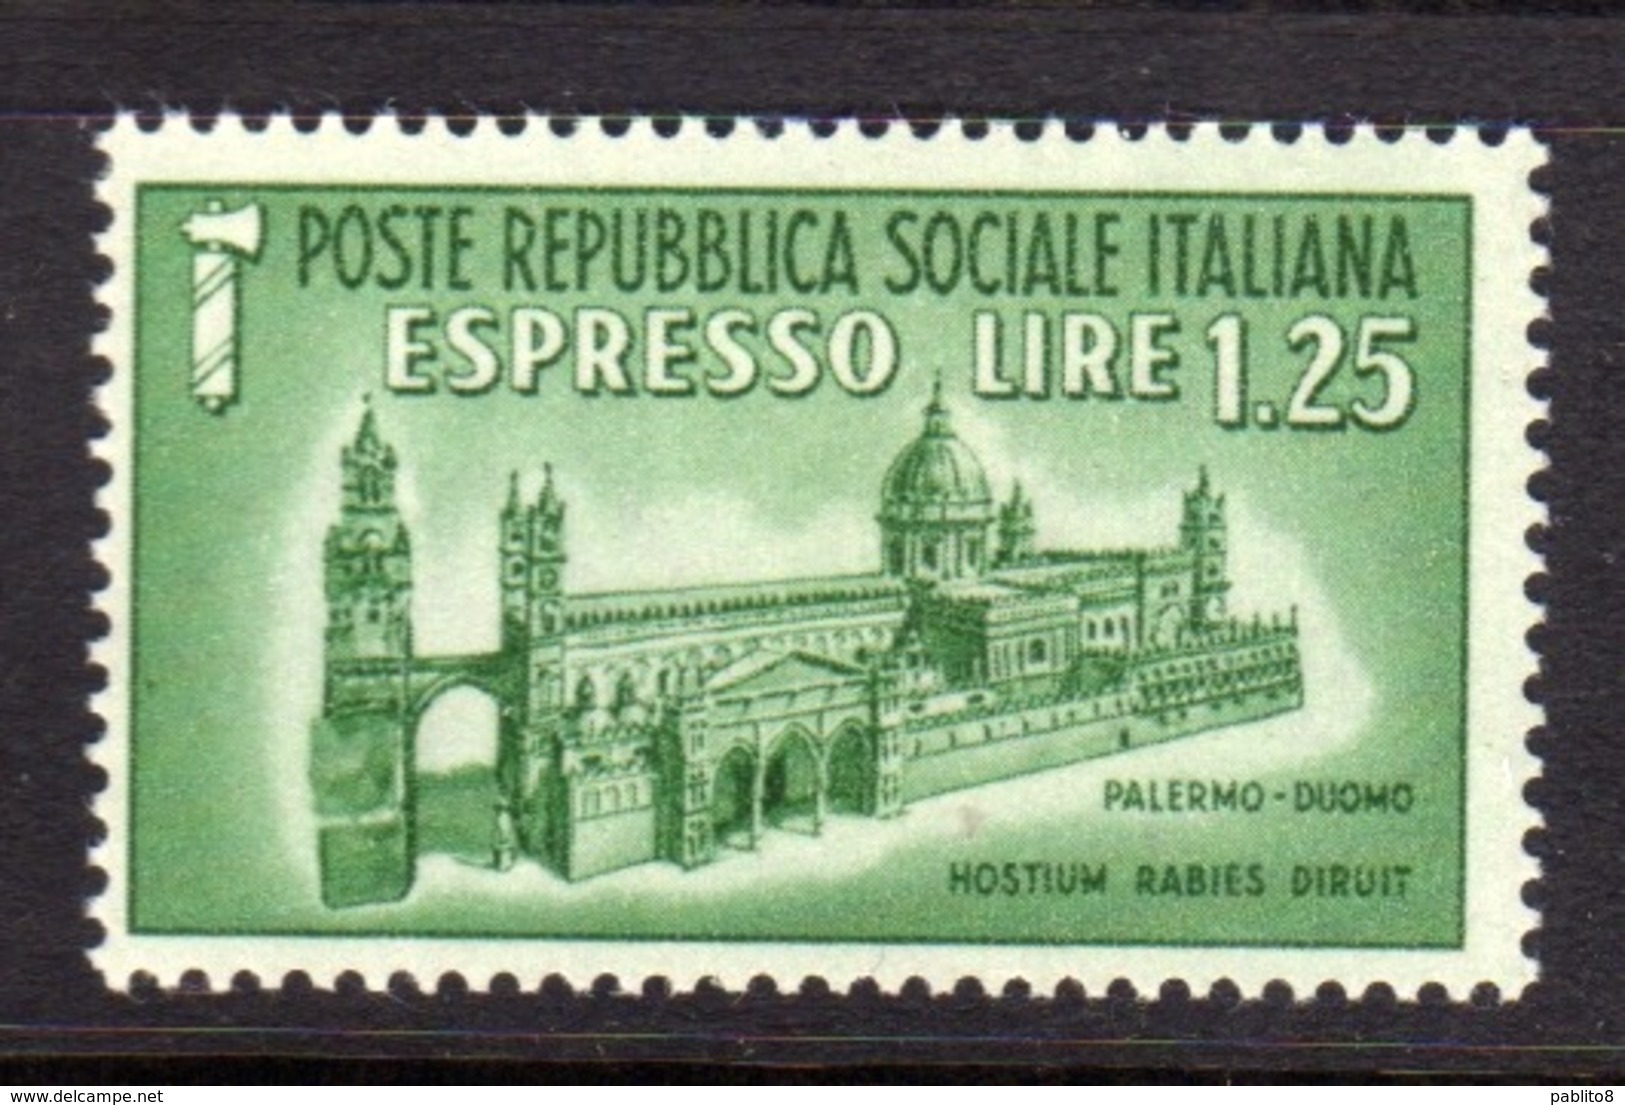 ITALIA REGNO ITALY KINGDOM REPUBBLICA SOCIALE RSI 1944 ESPRESSO SPECIAL DELIVERY RSI DUOMO DI PALERMO LIRE 1,25 MNH - Posta Espresso